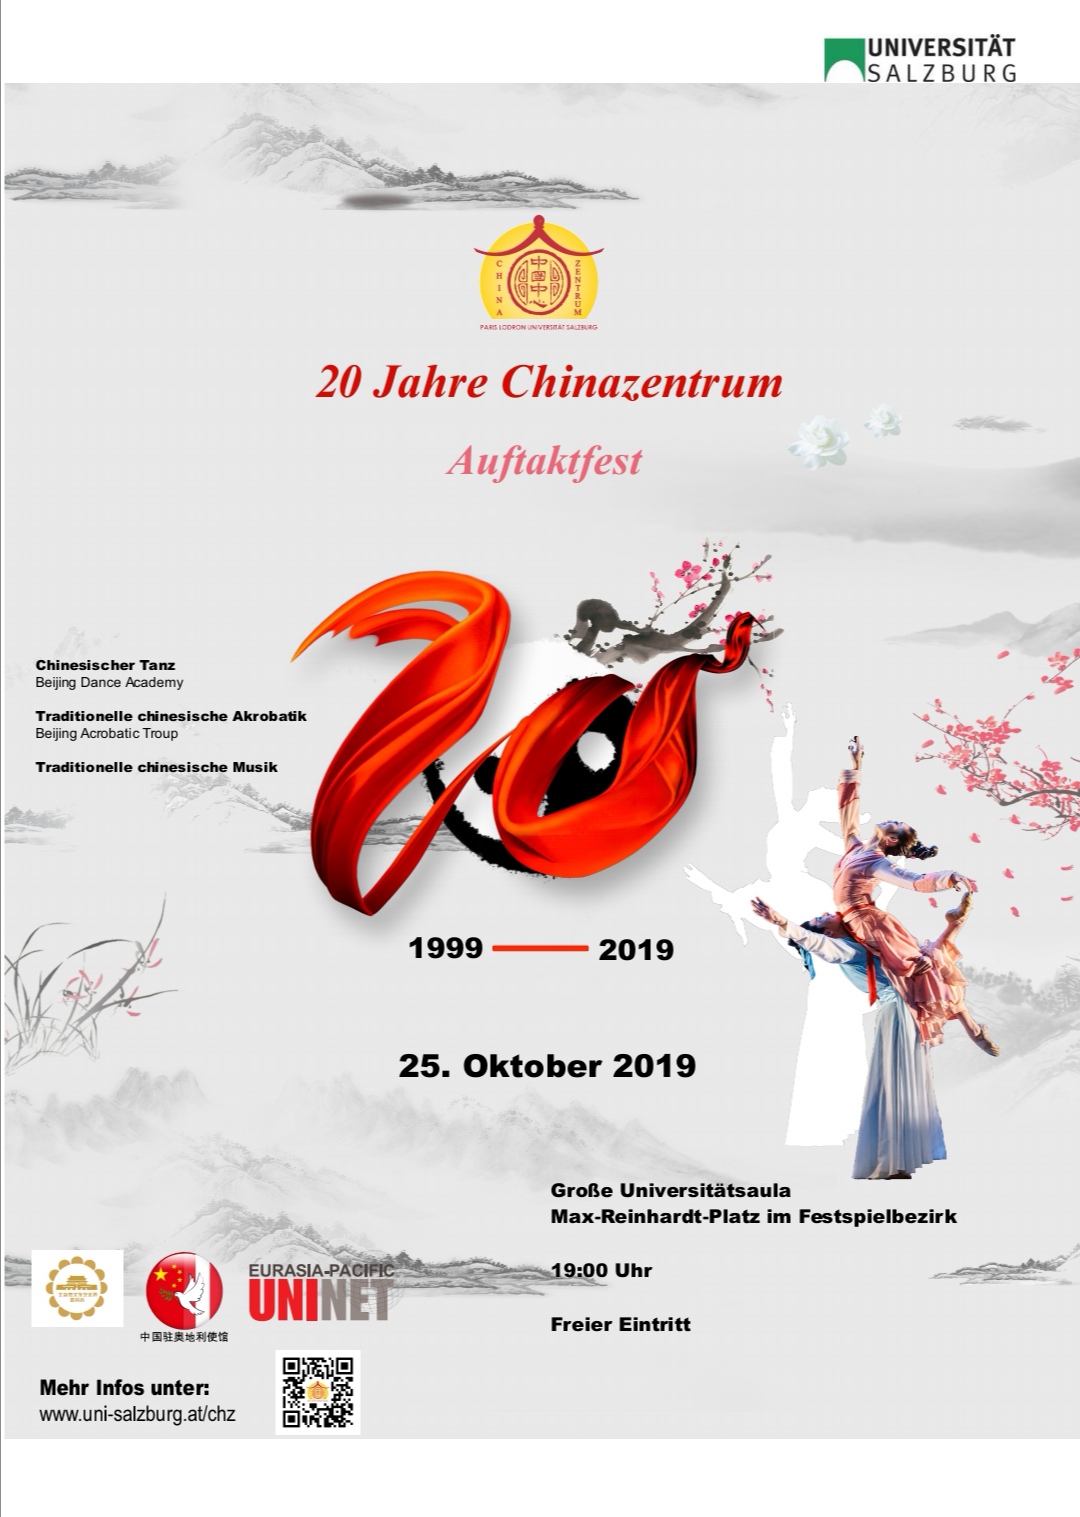 Plakat Auftaktfest 20 Jahre Chinazentrum